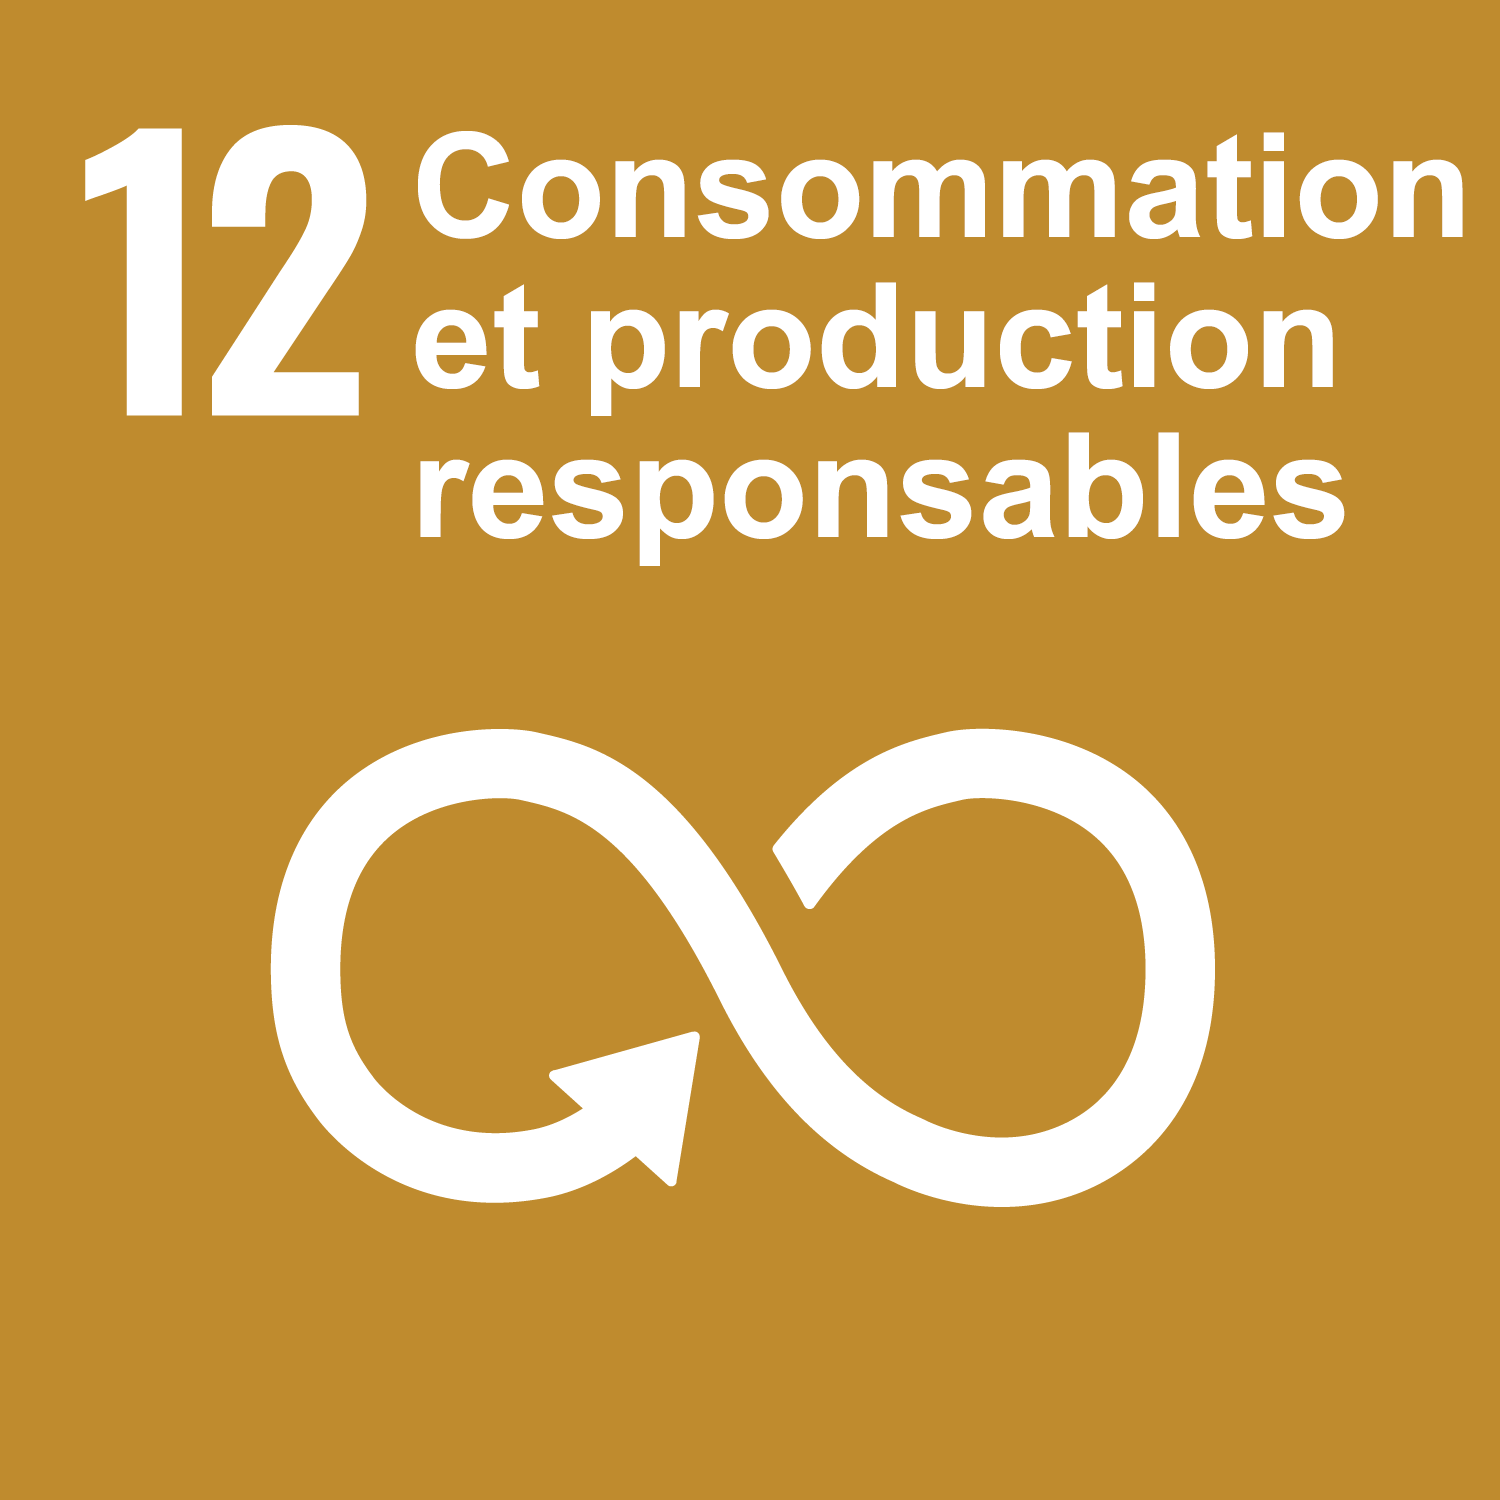 Objectif 12: Consommation et production responsables